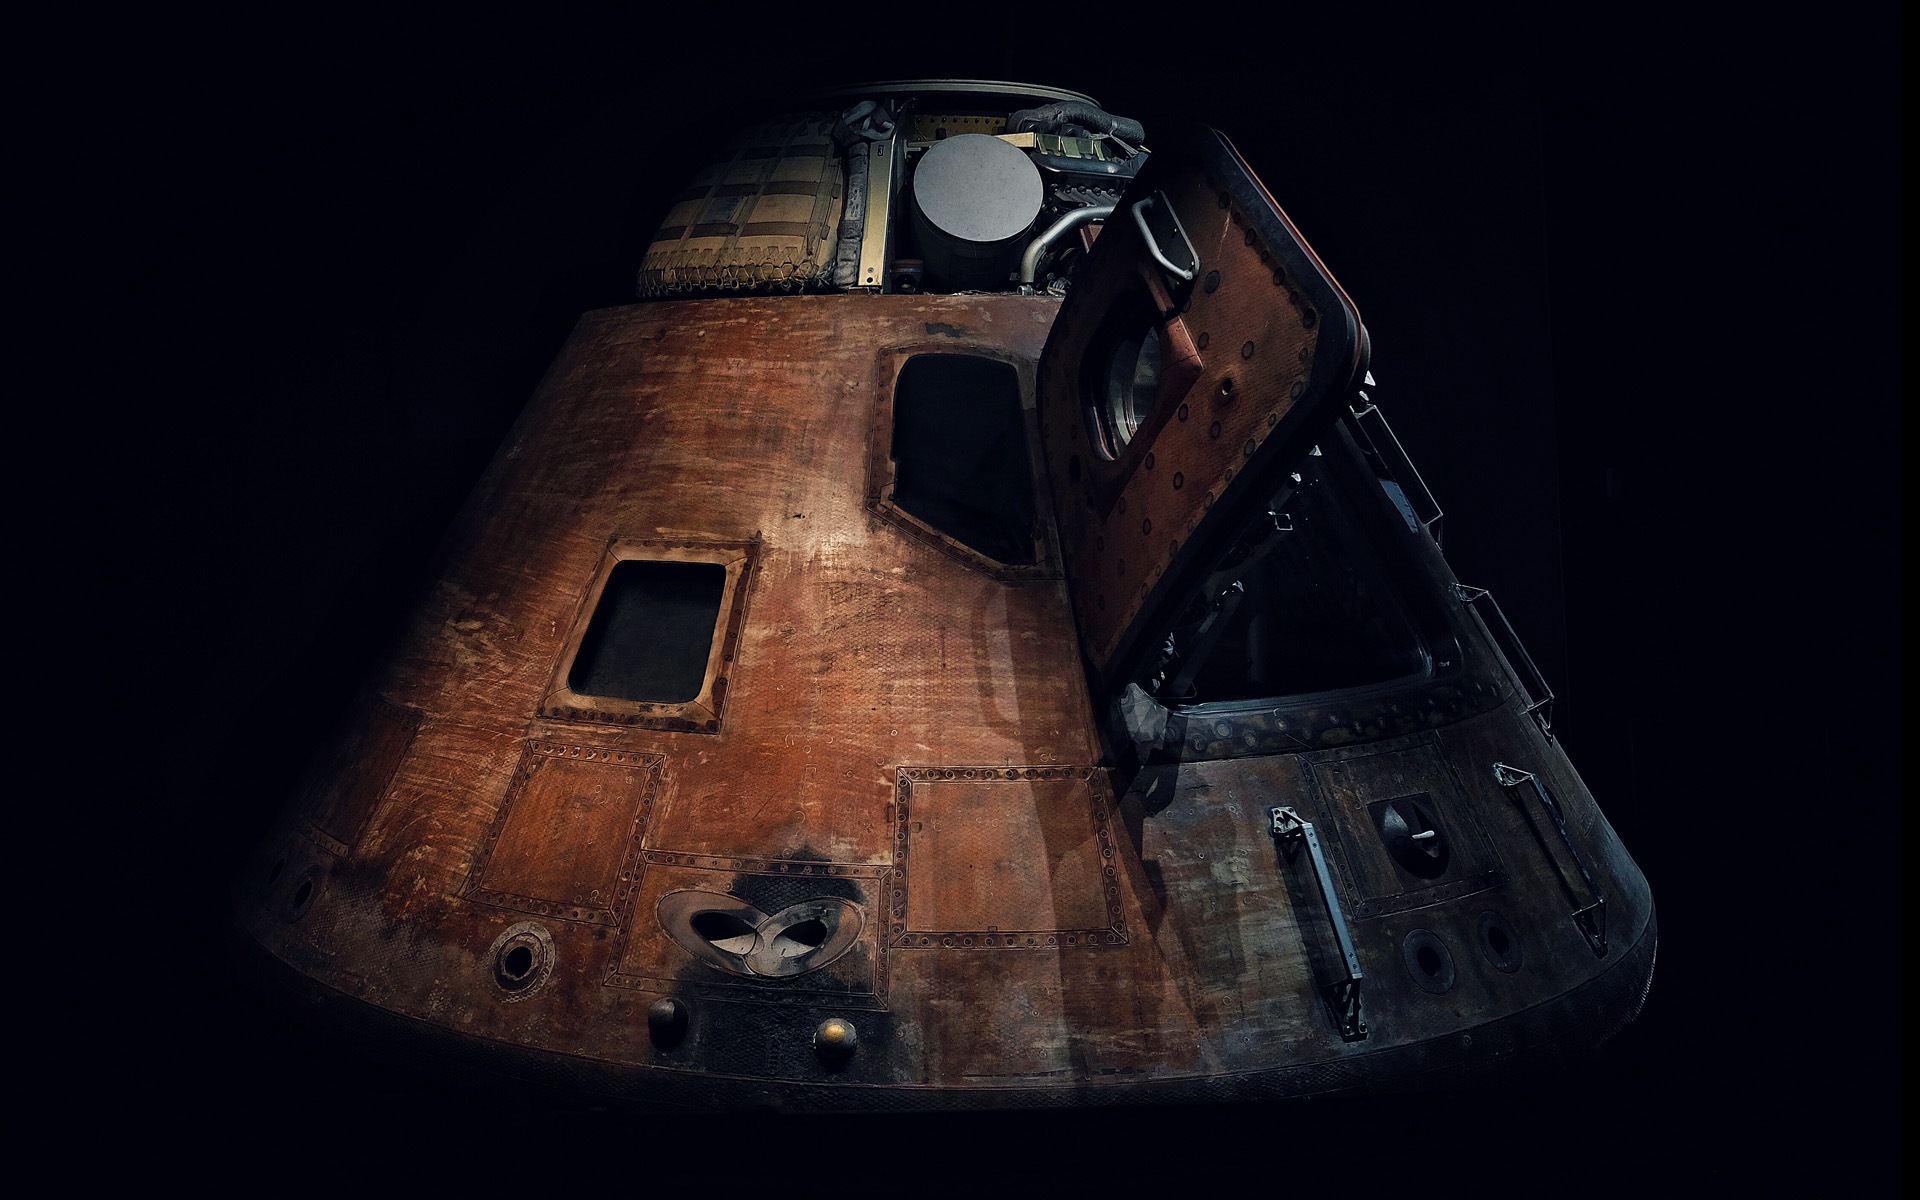 NASA Photo of Apollo Orbiter by Blair Bunting